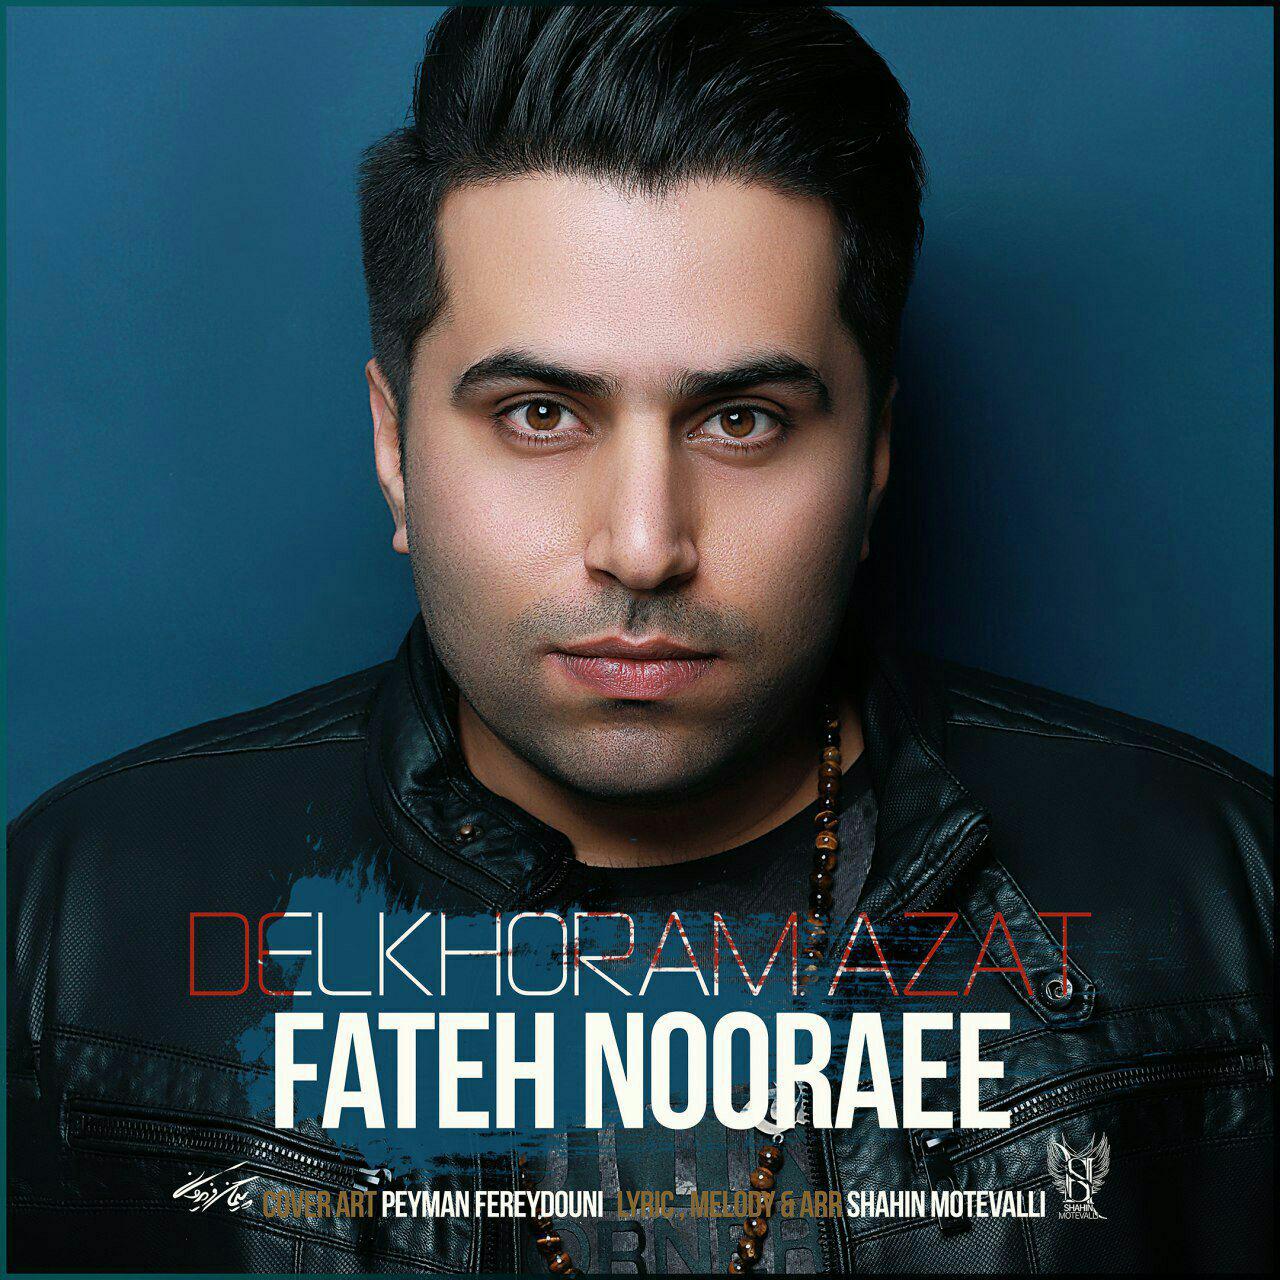  دانلود آهنگ جدید فاتح نورایی - دلخورم ازت | Download New Music By Fateh Nooraee - Delkhoram Azat